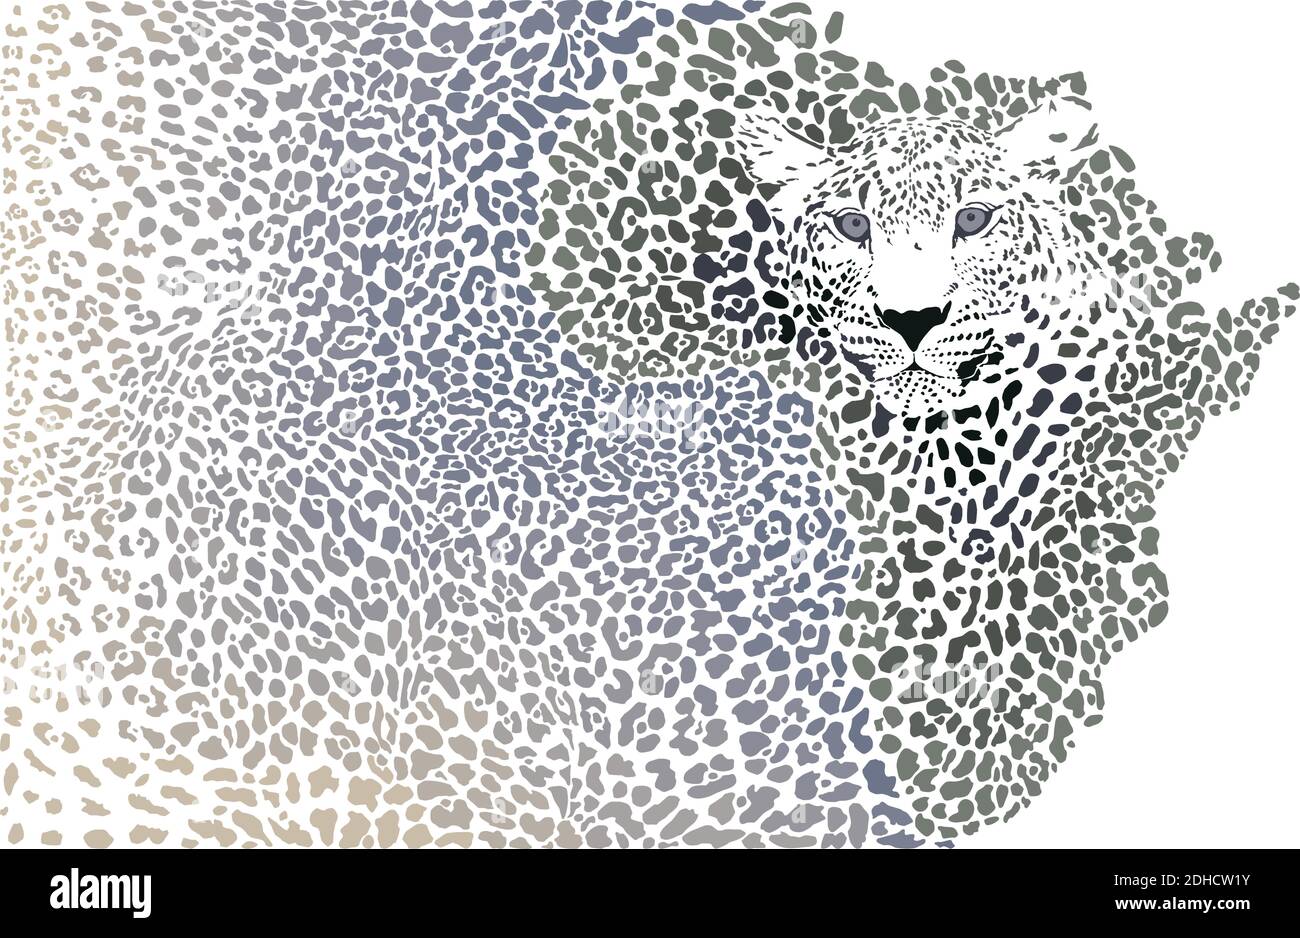 Léopard africain - fond de la carte du continent Illustration de Vecteur